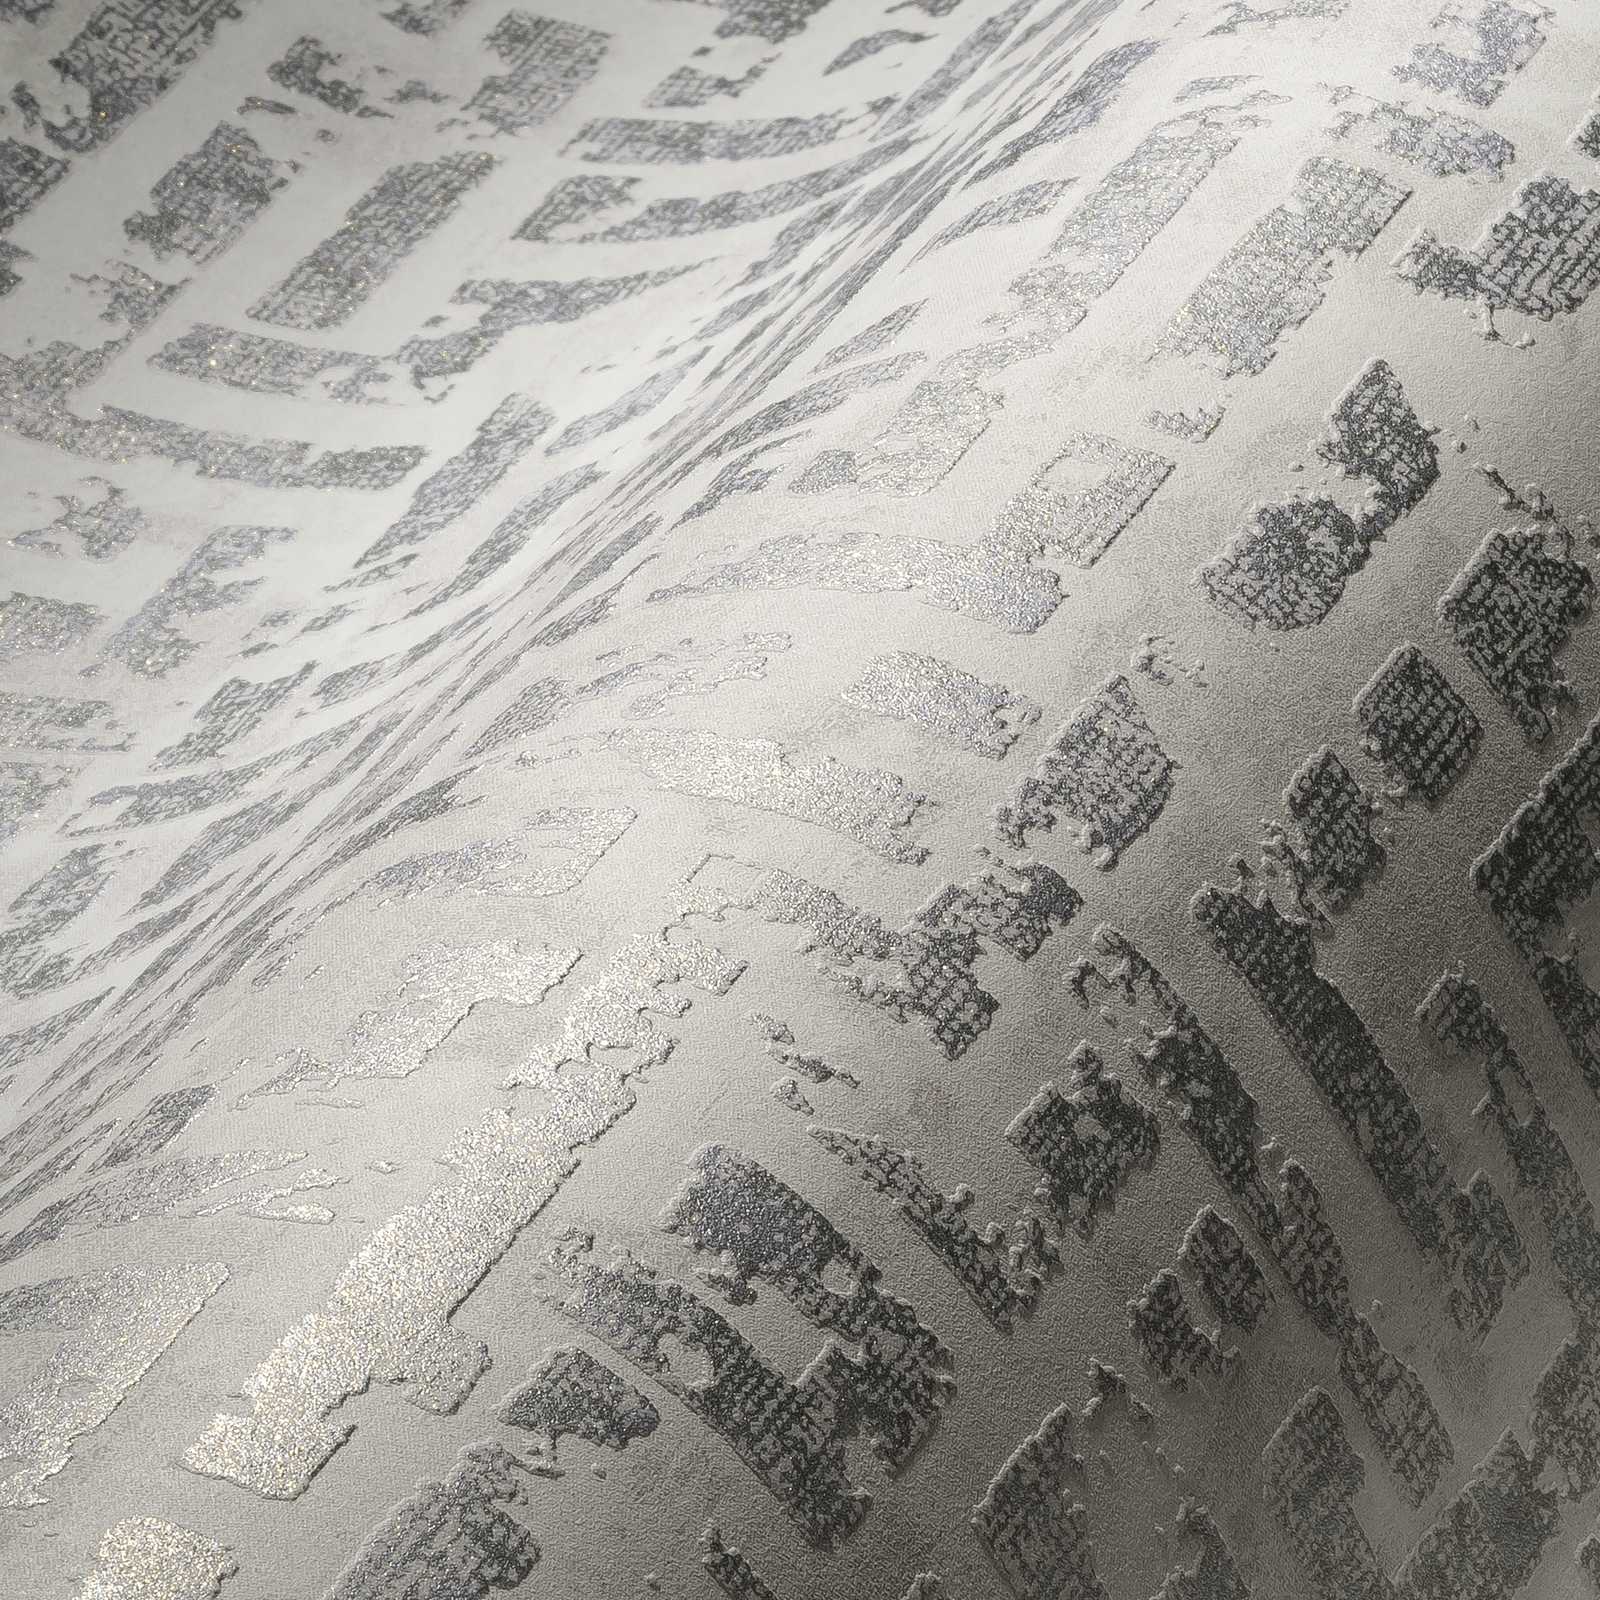             Used Optik Tapete mit Relief-Muster – Weiß, Metallic, Grau
        